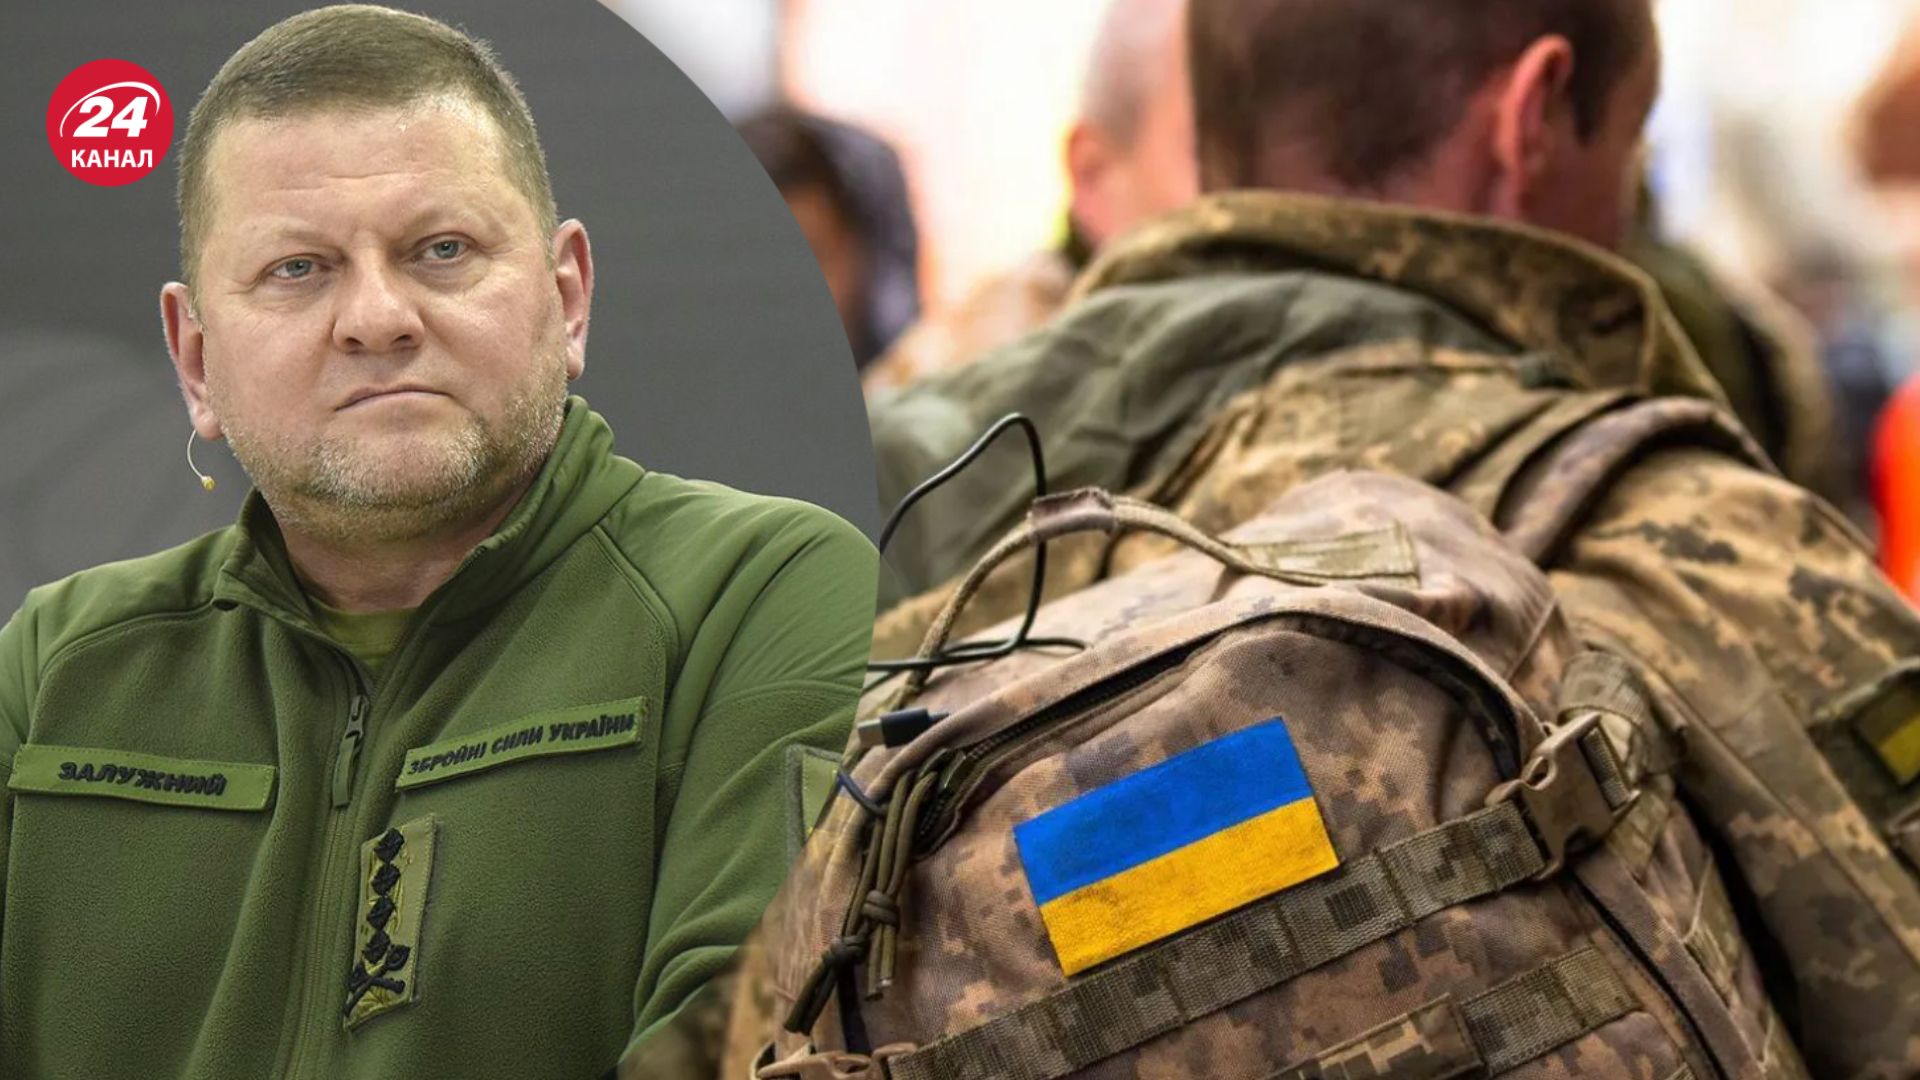 Залужный в колонке упомянул вопрос мобилизации в Украине